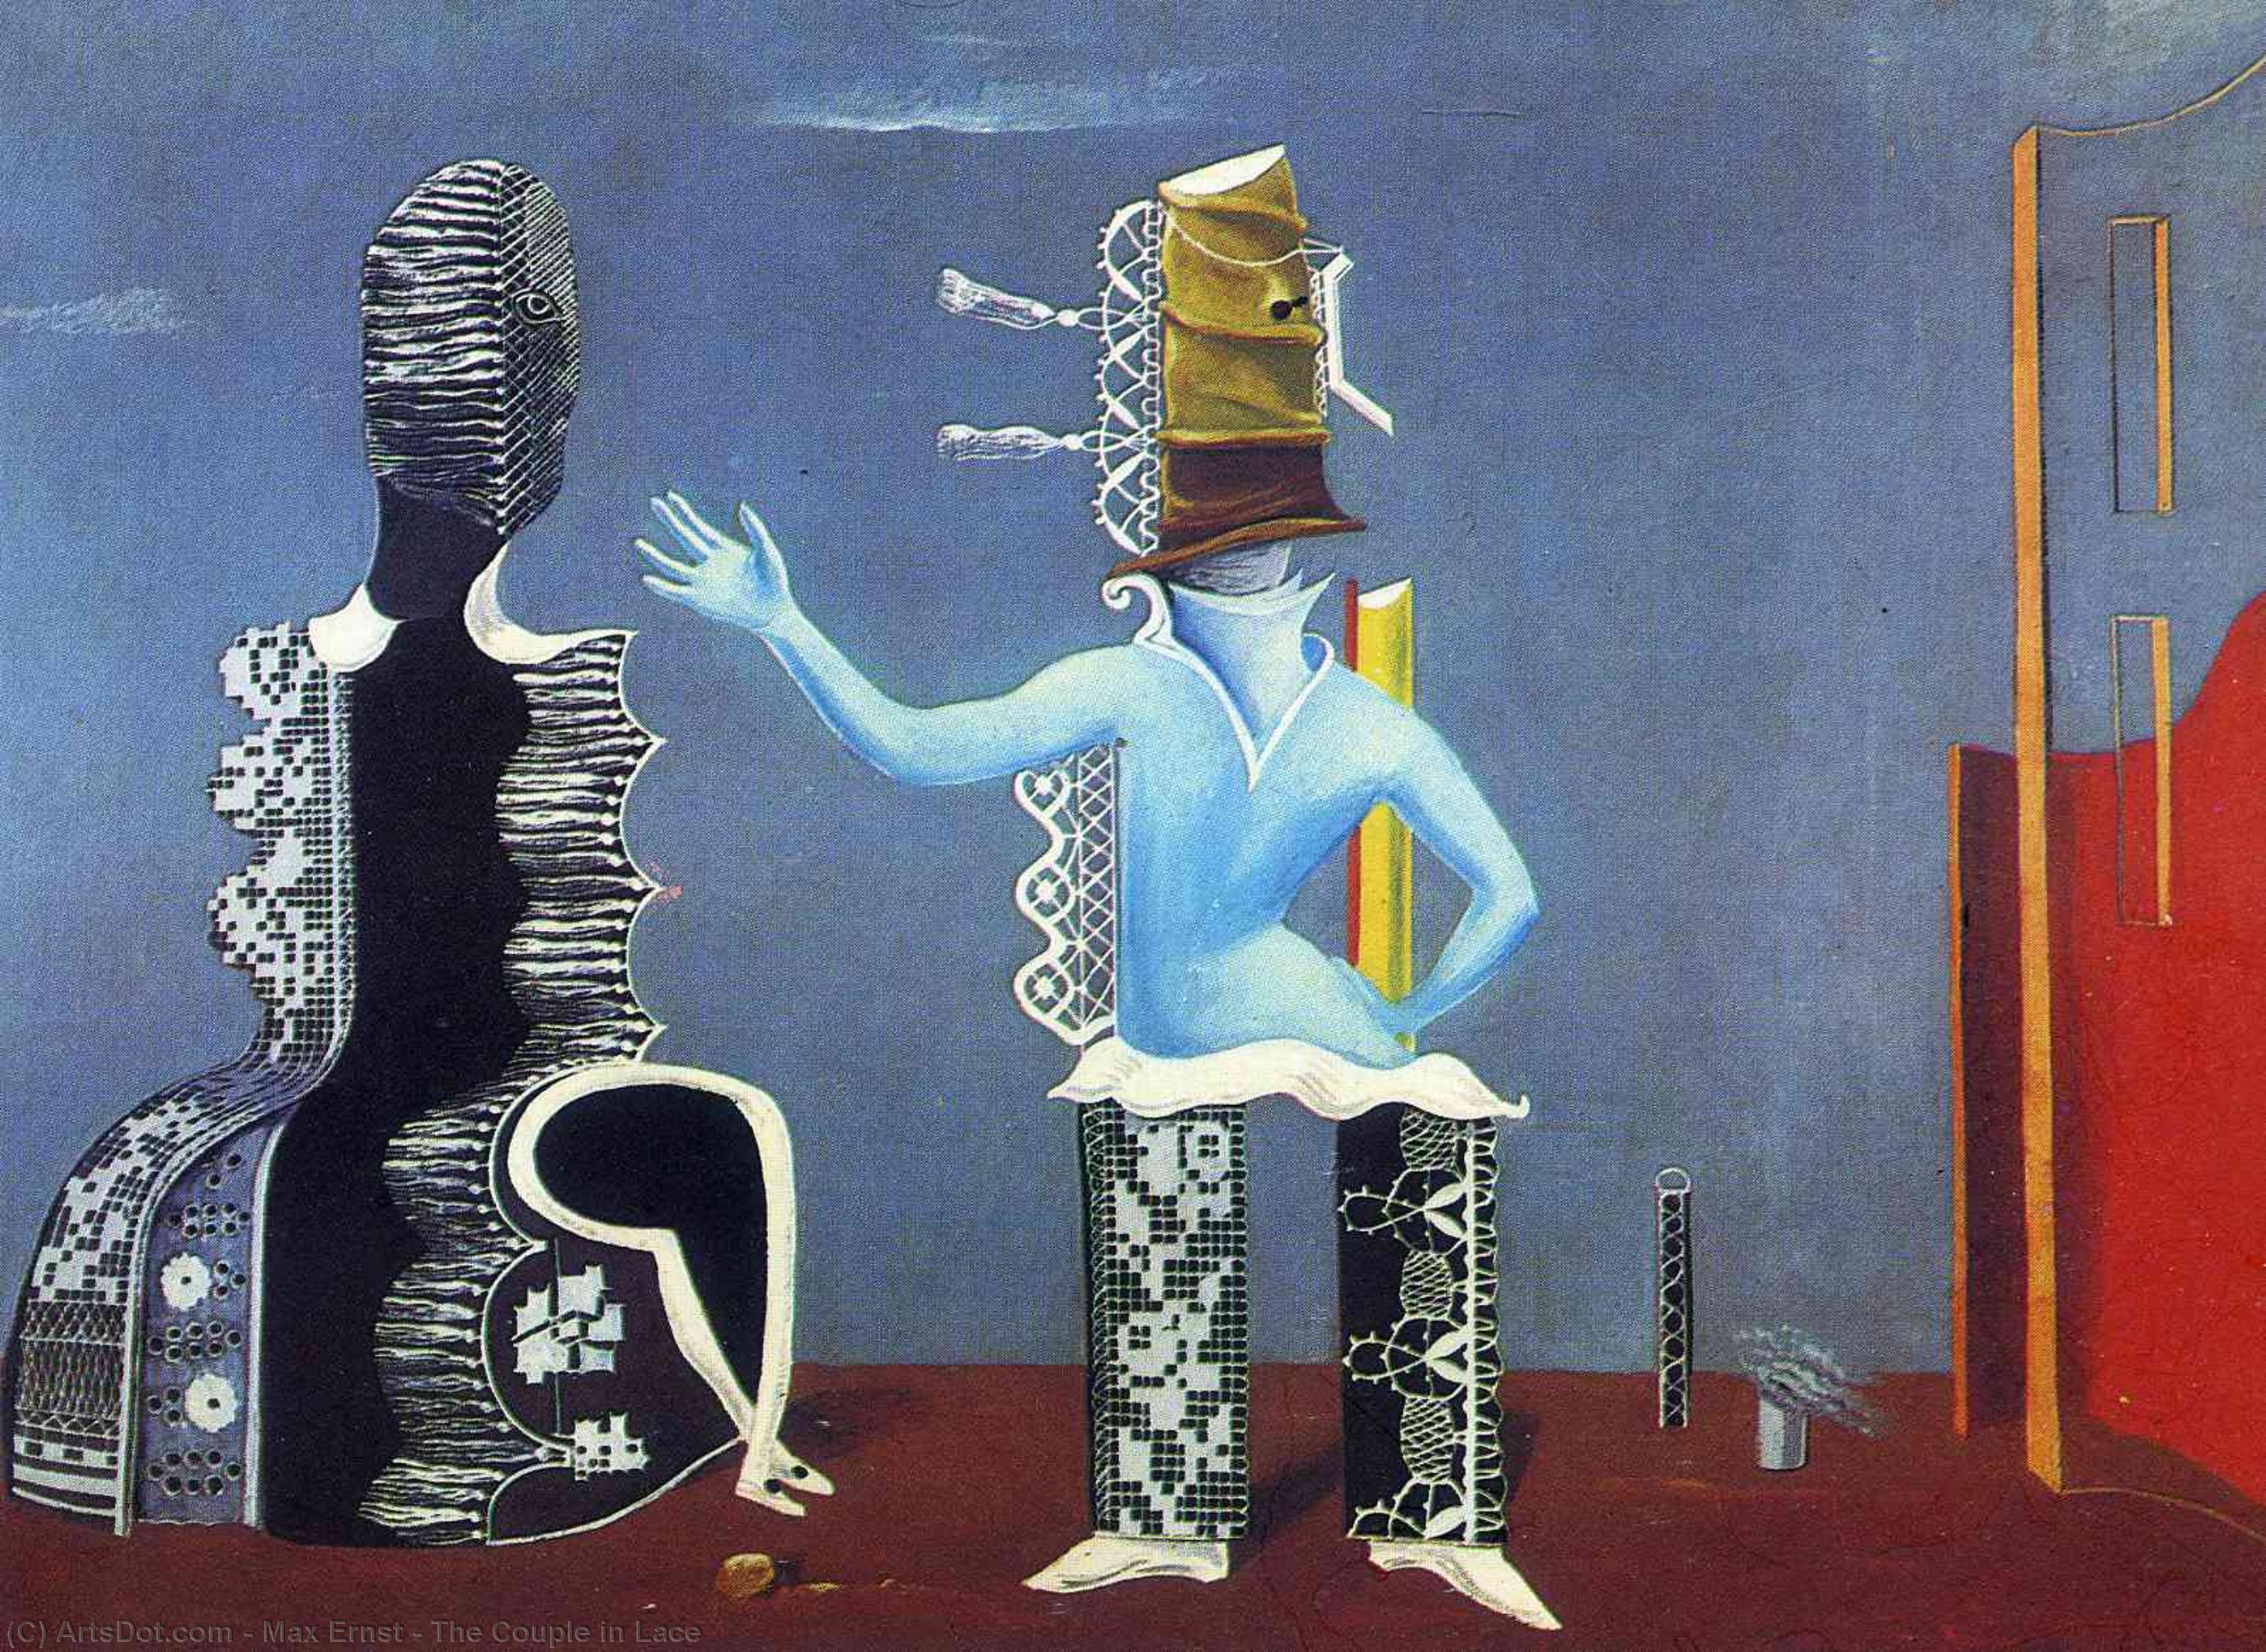 Wikioo.org - Bách khoa toàn thư về mỹ thuật - Vẽ tranh, Tác phẩm nghệ thuật Max Ernst - The Couple in Lace